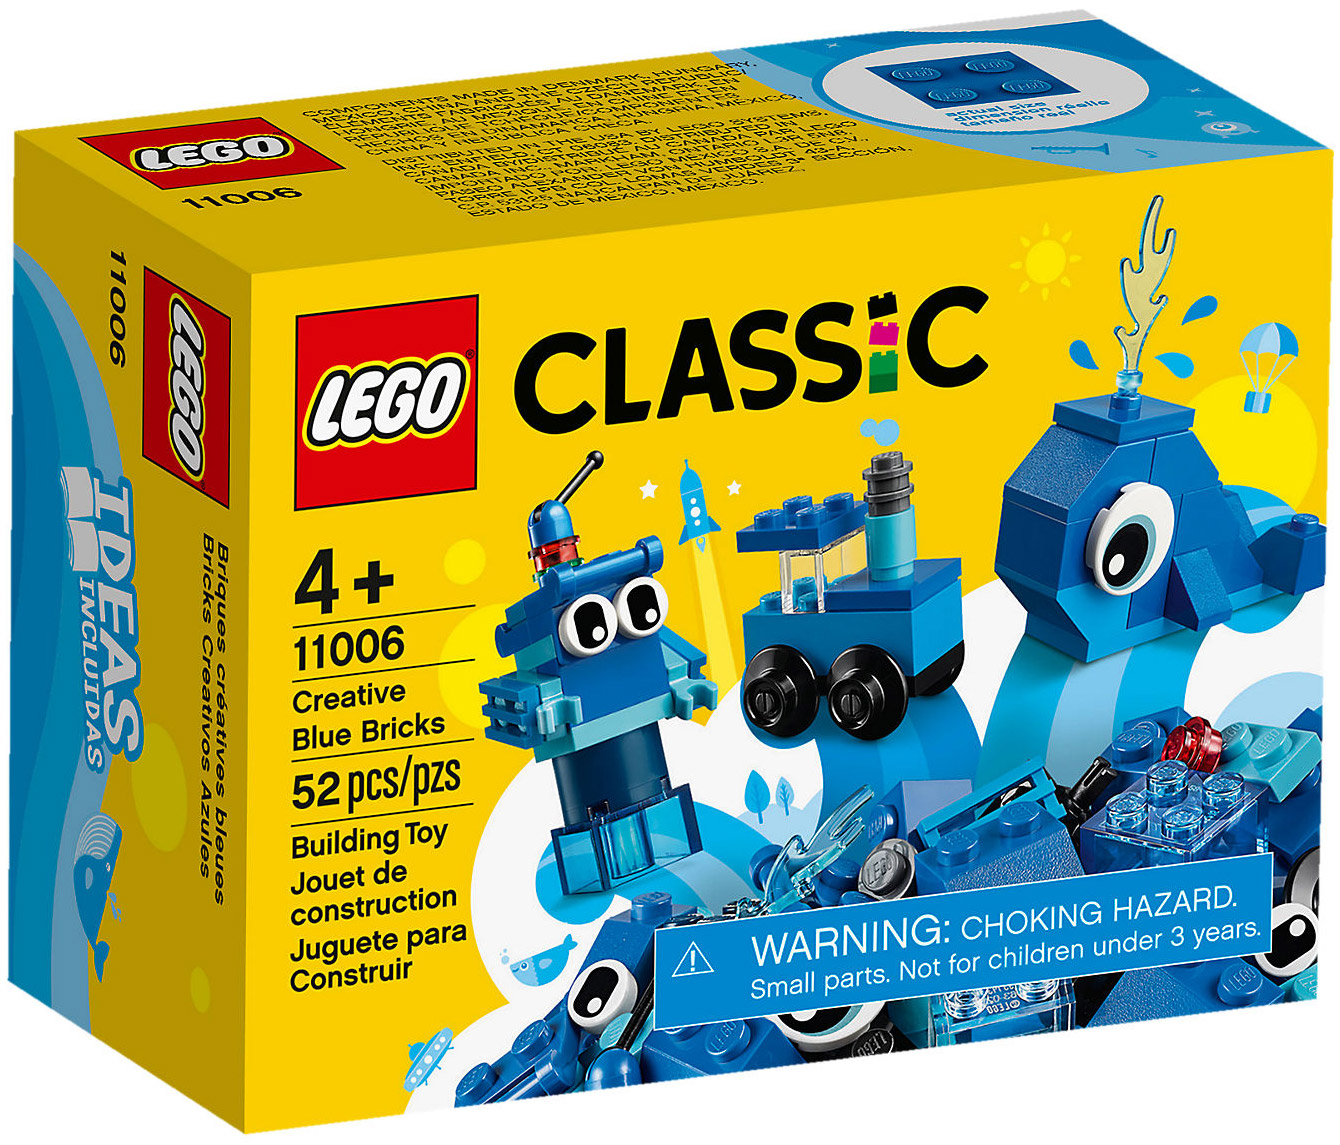 LEGO Classic Briques et plaques à gogo ! 11717 LEGO : la boîte à